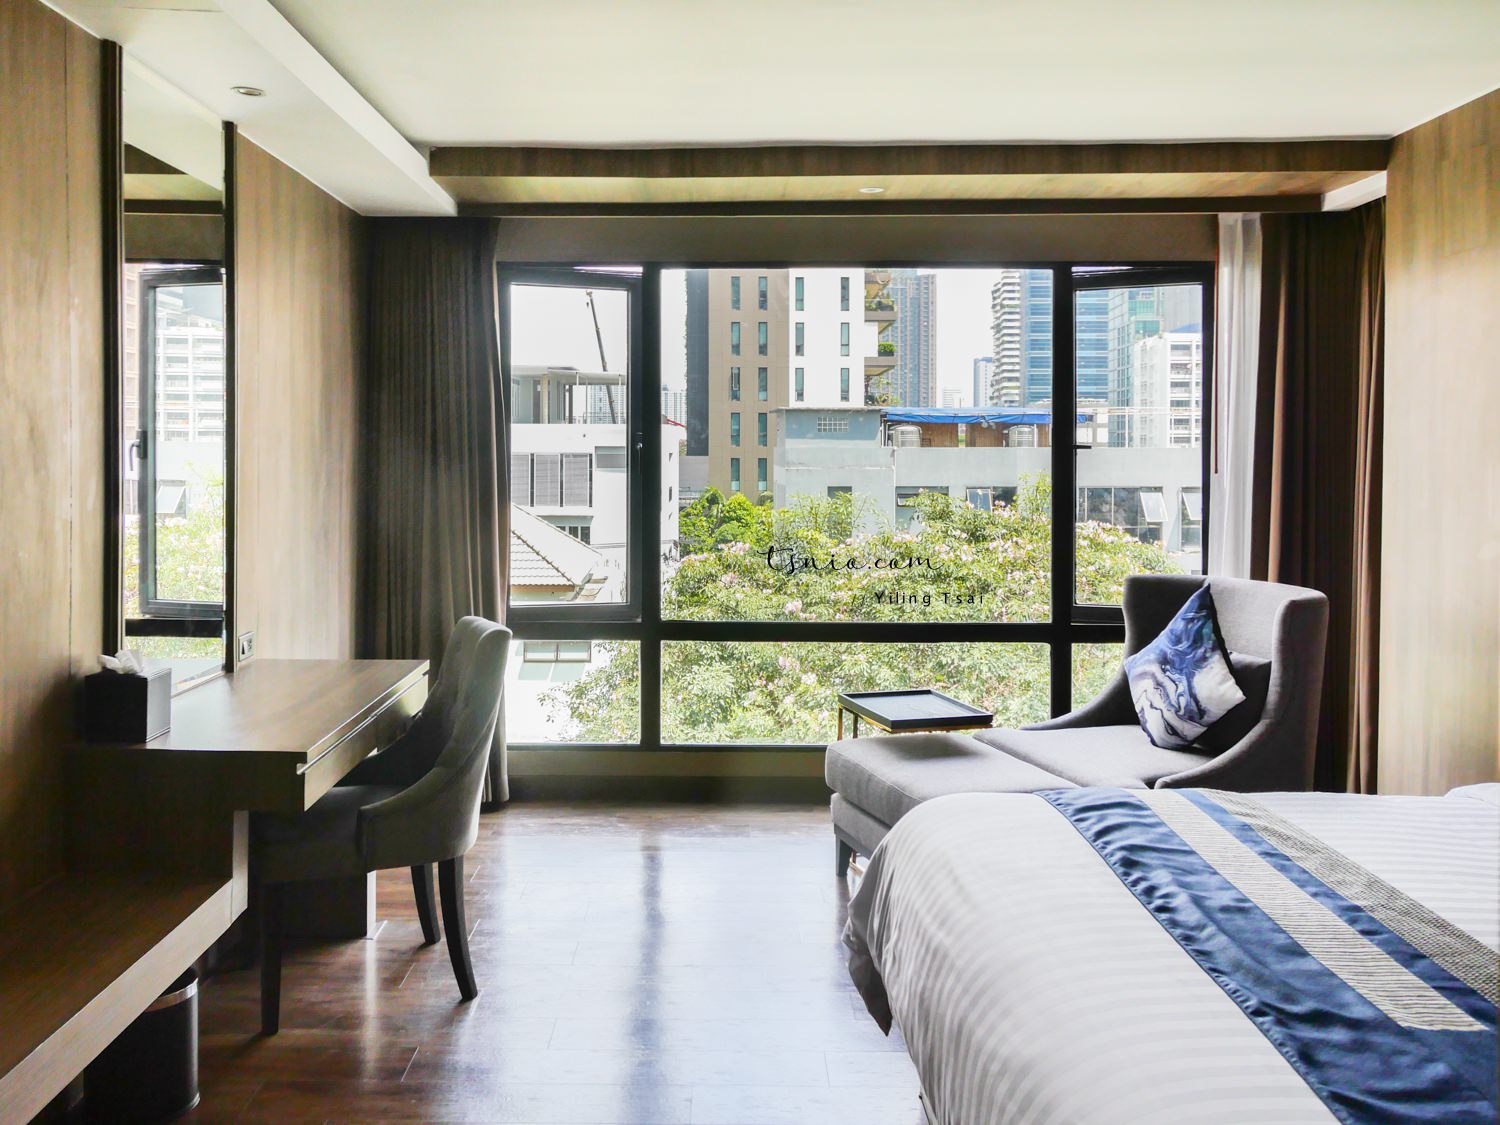 泰國曼谷飯店推薦 Arte Hotel Bangkok 地點超棒 Asoke站附近平價住宿